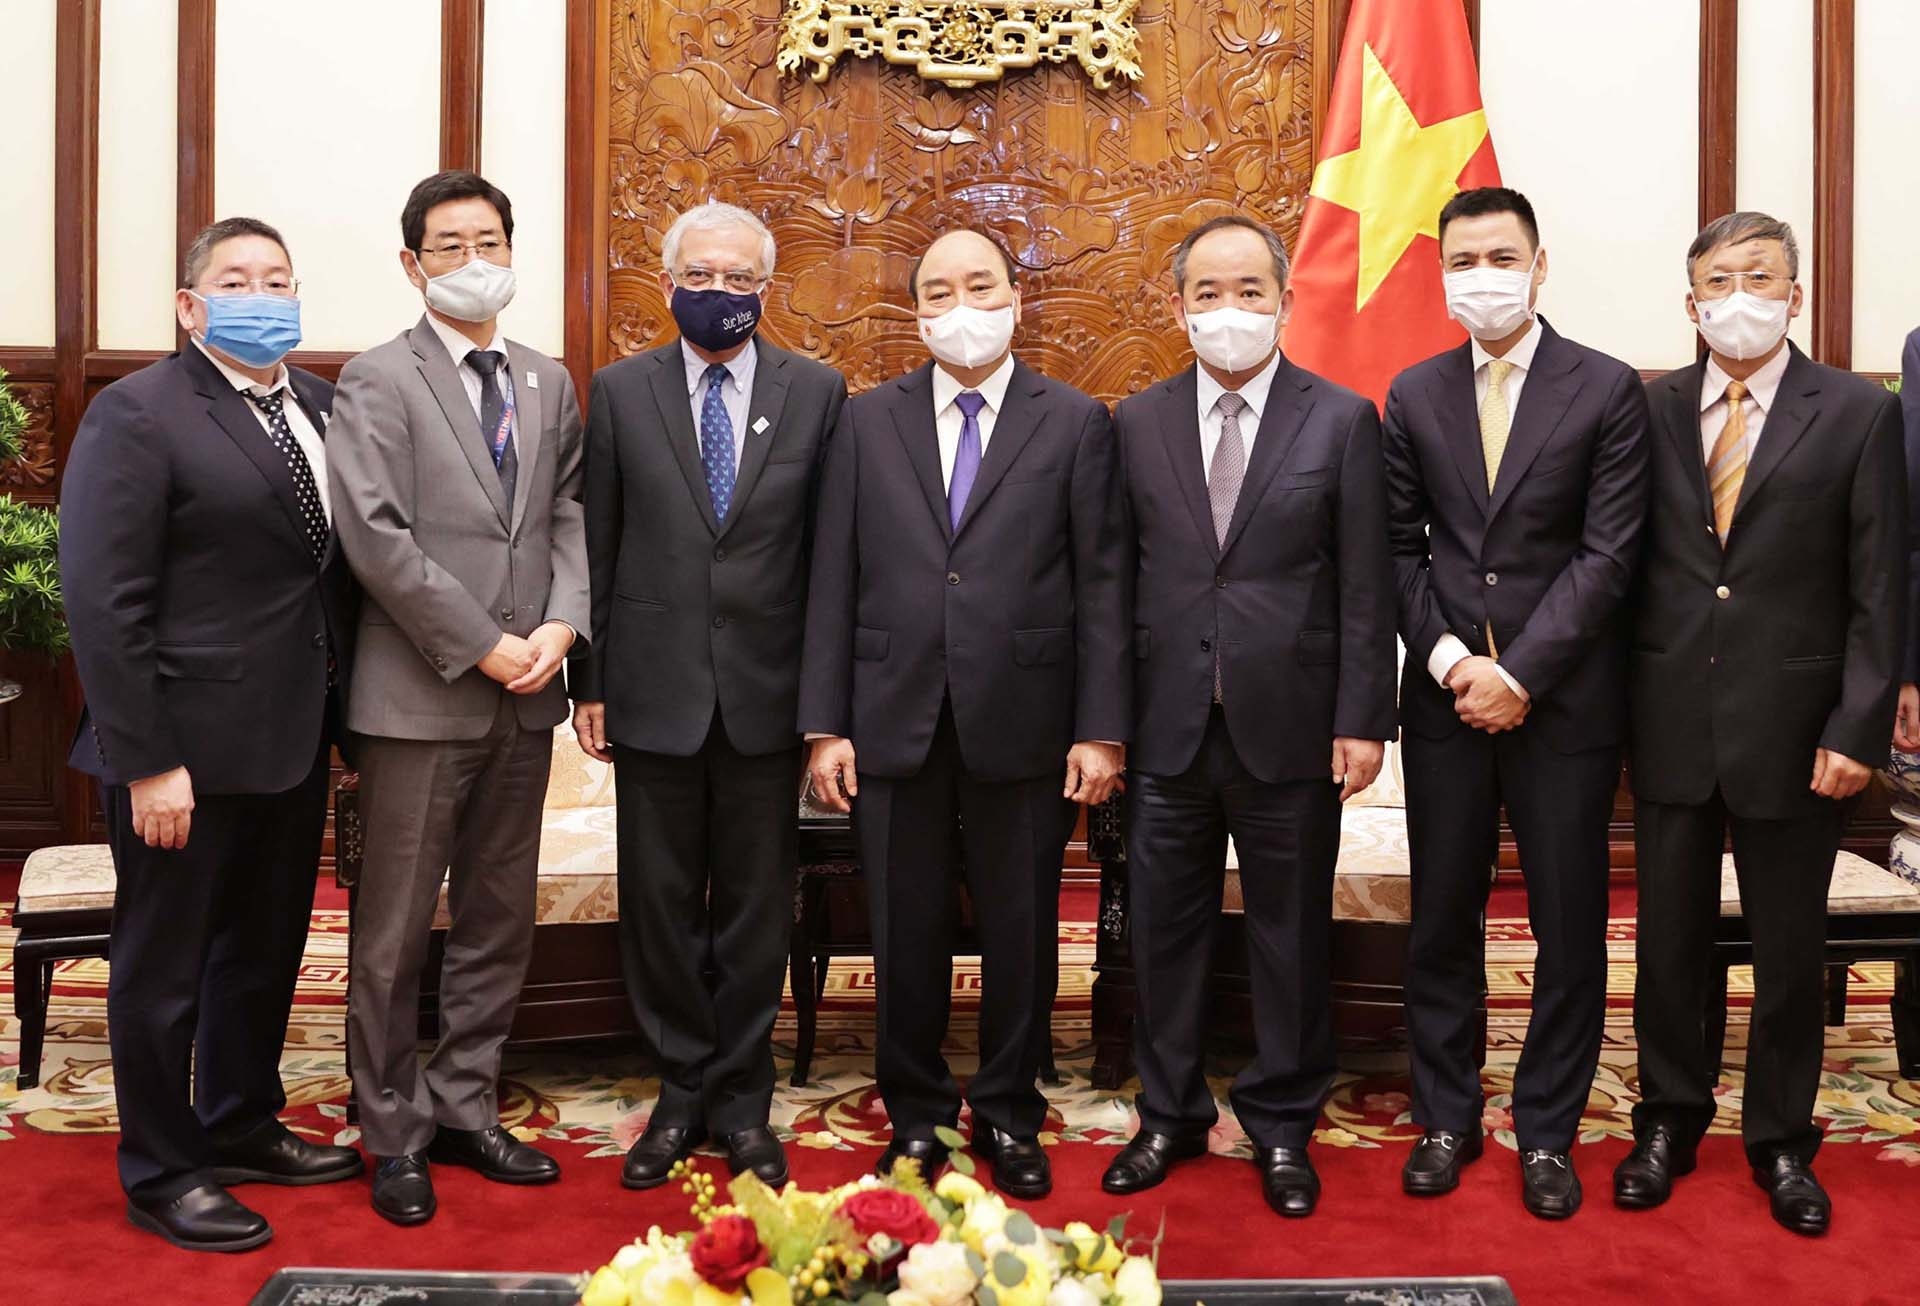 Chủ tịch nước Nguyễn Xuân Phúc tiếp ông Kamal Malhotra, Điều phối viên thường trú Liên hợp quốc tại Việt Nam, đến chào từ biệt trước khi kết thúc nhiệm kỳ công tác. (Nguồn: TTXVN)